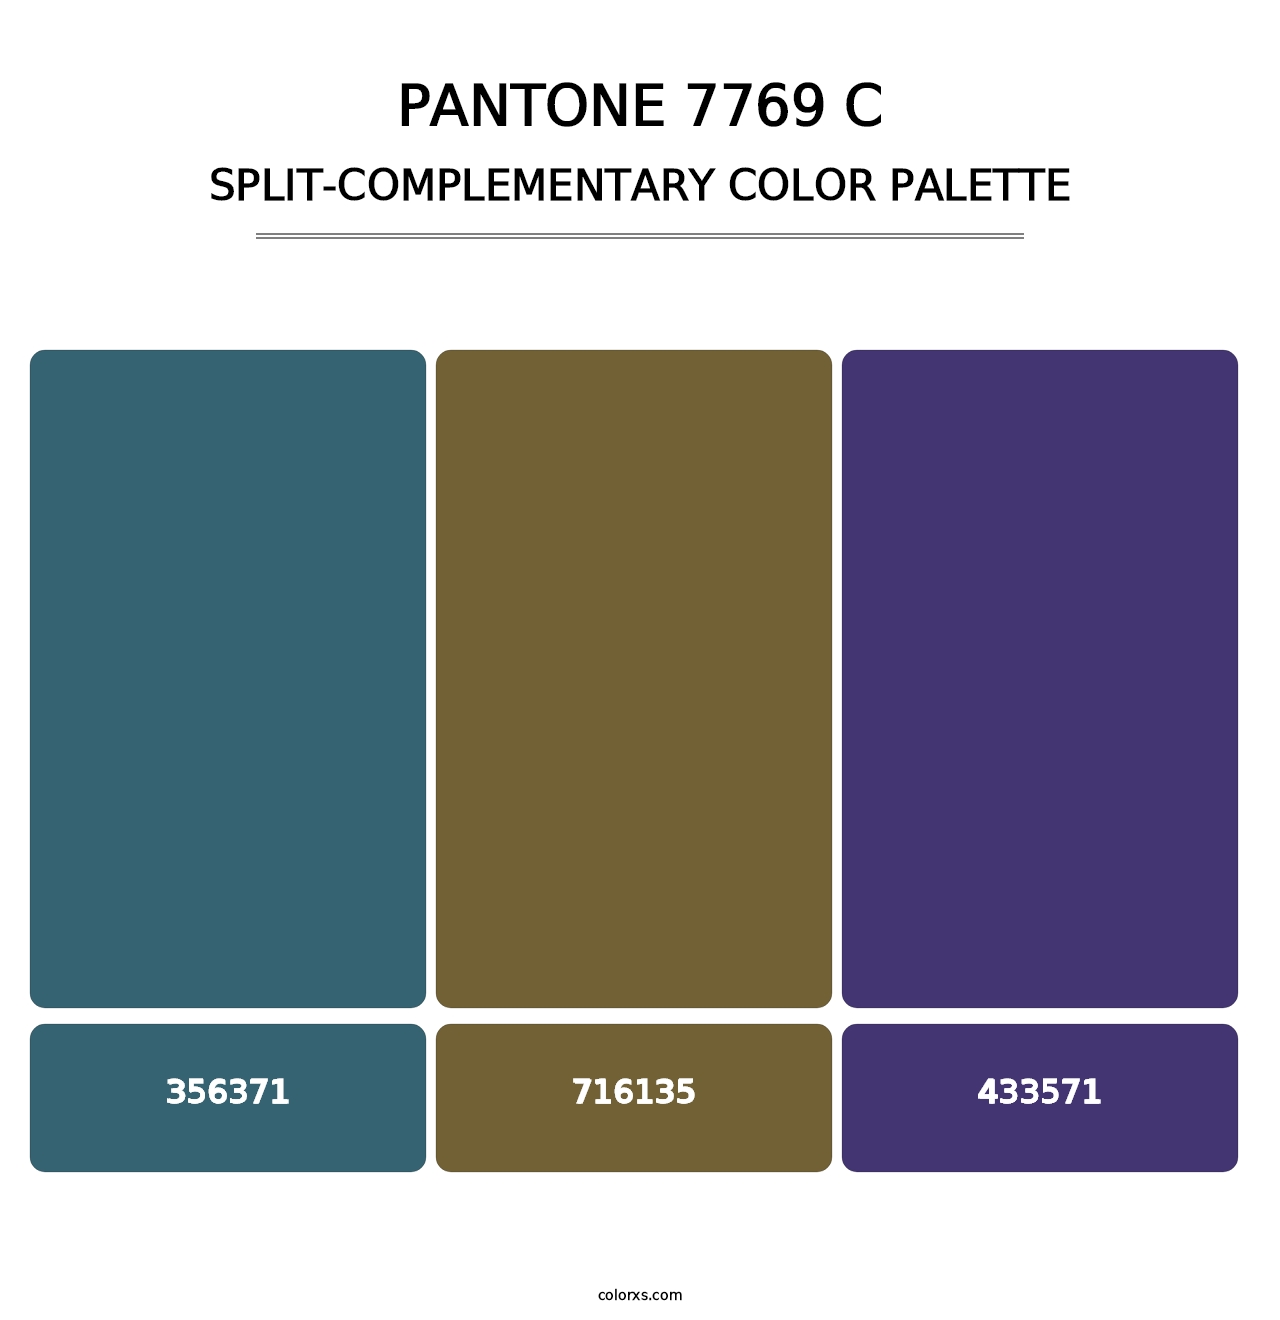 PANTONE 7769 C - Split-Complementary Color Palette